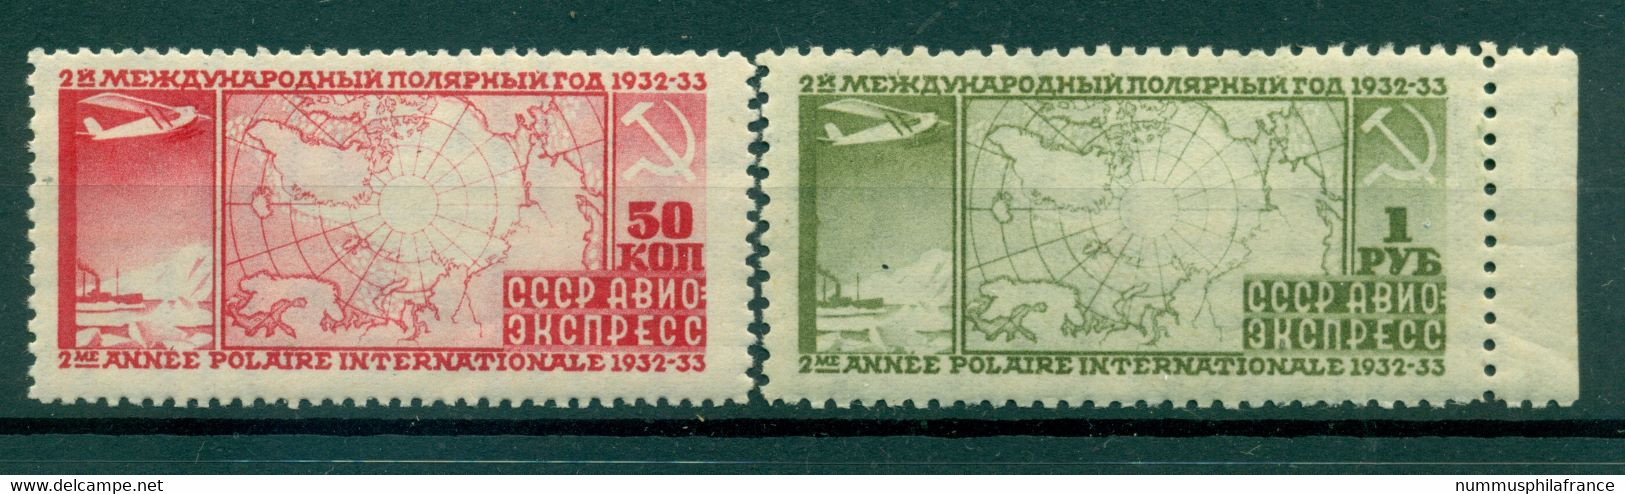 URSS 1932 - Y & T N. 31/32 Poste Aérienne - 2e Année Polaire Internationale (Michel N. 410 A/11 B) - Nuevos